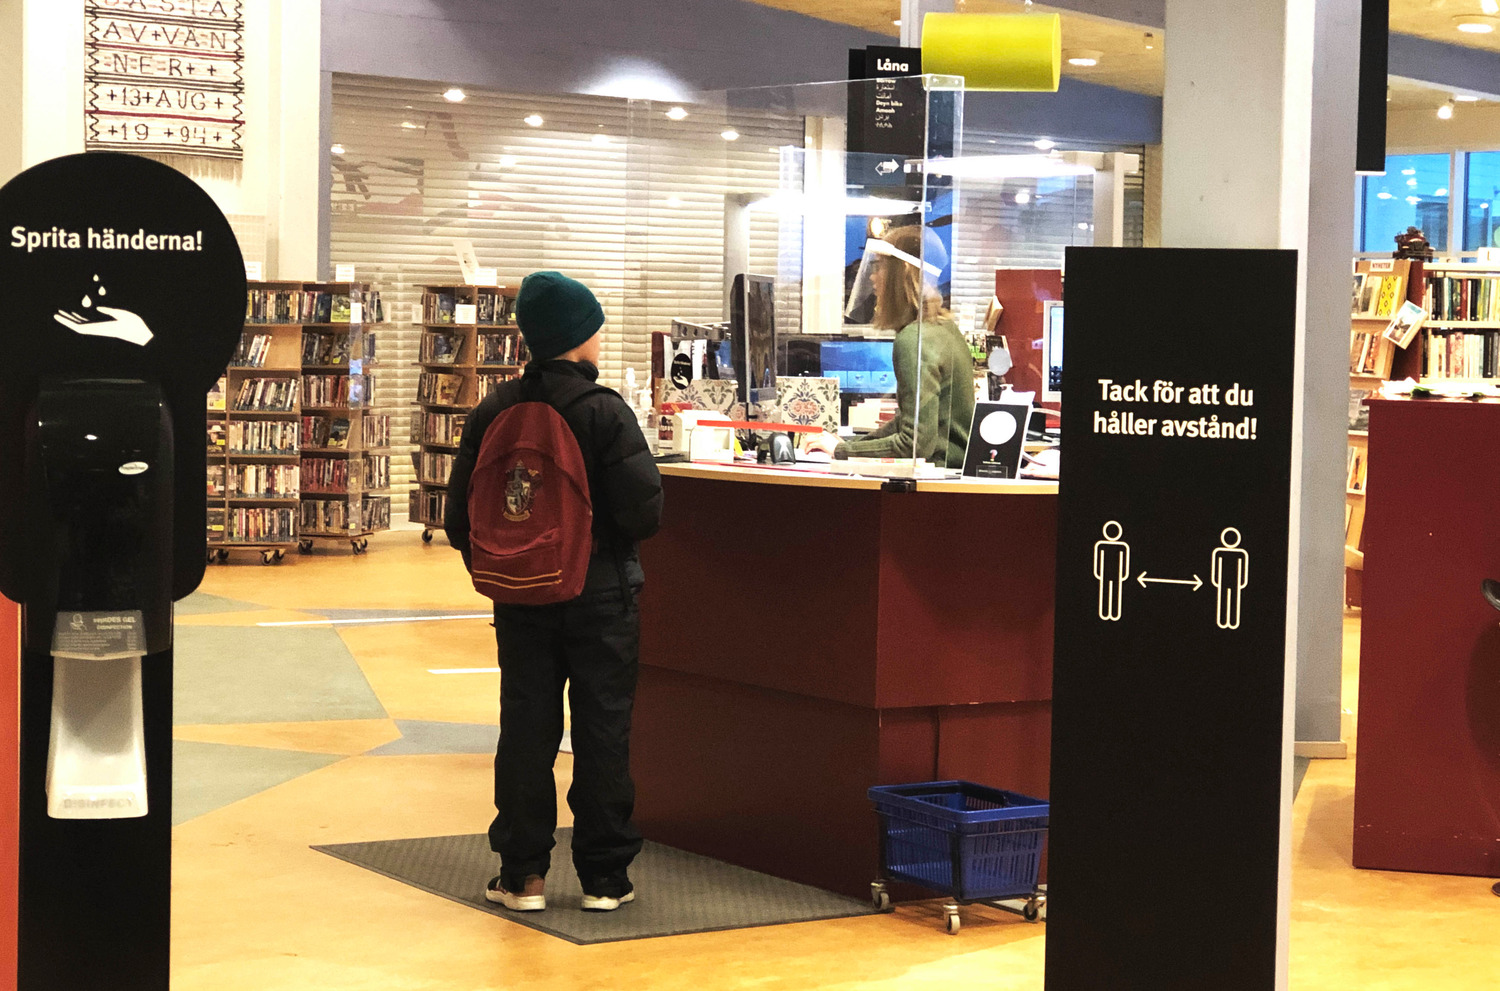 Ett barn står vid en biblioteksdisk, där personalen bär visir. Bakom barnet syns en behållare med handsprit och en skylt som uppmanar att hålla avstånd.